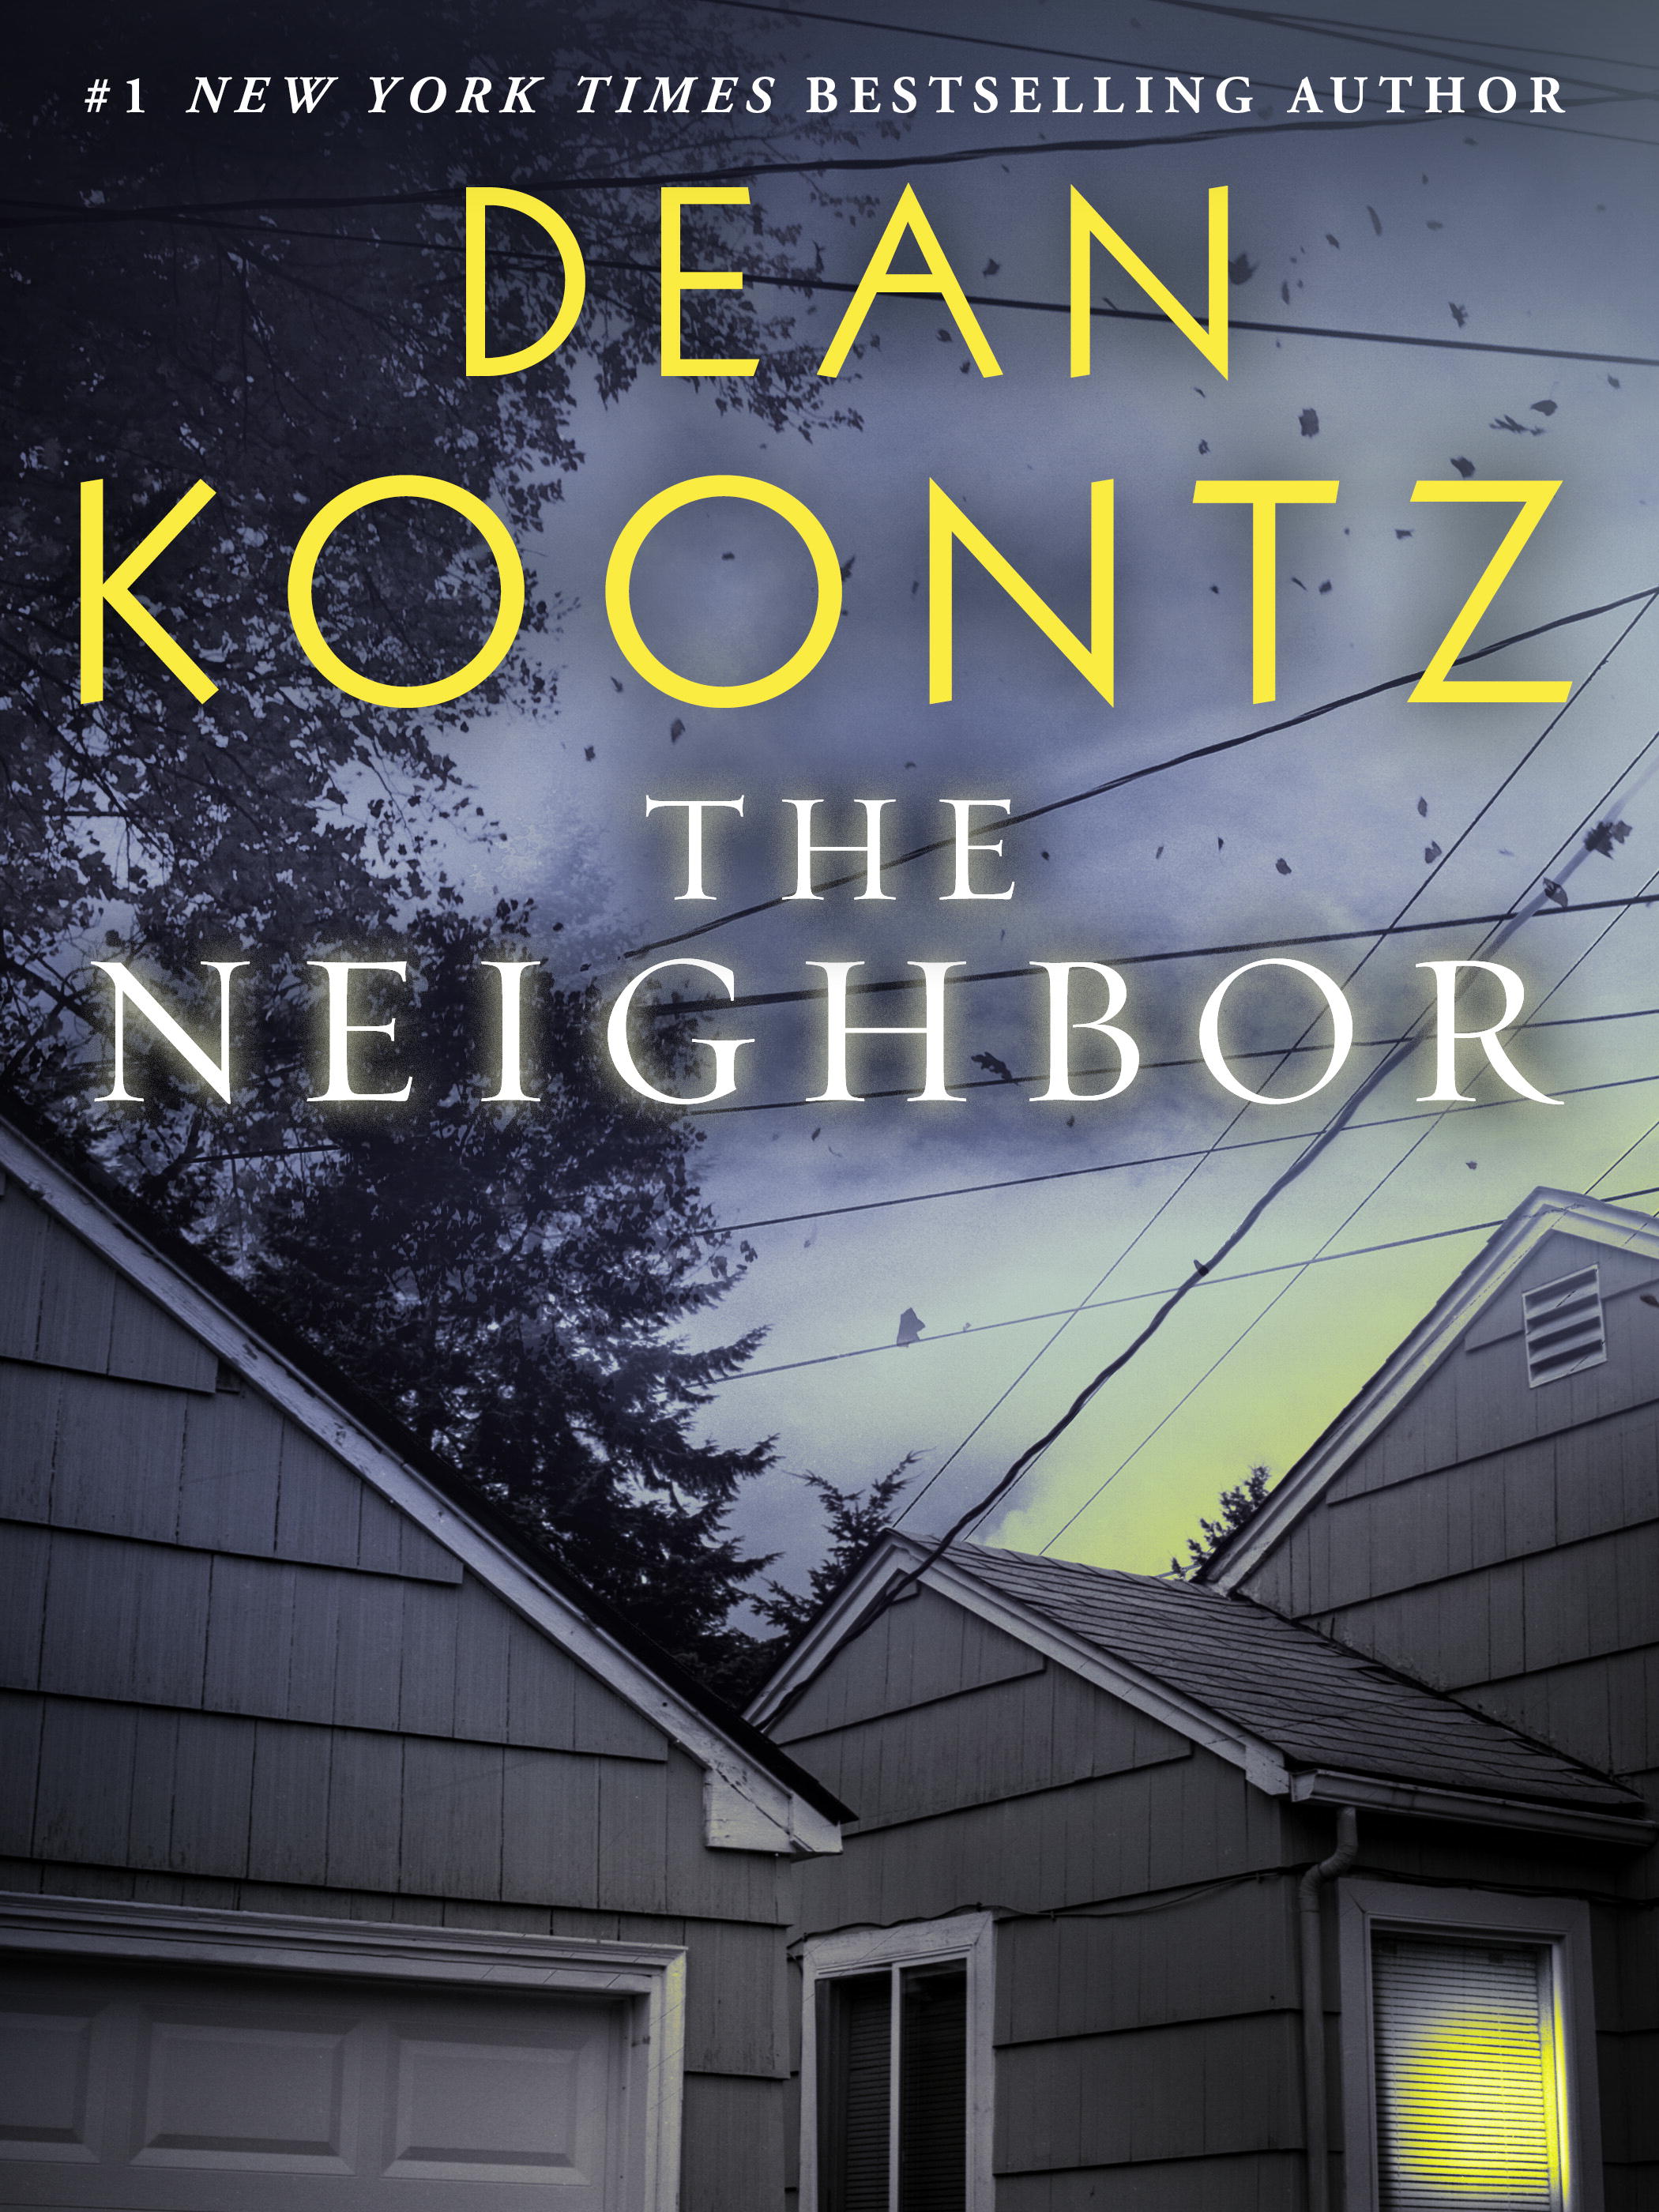 a list of dean koontz books